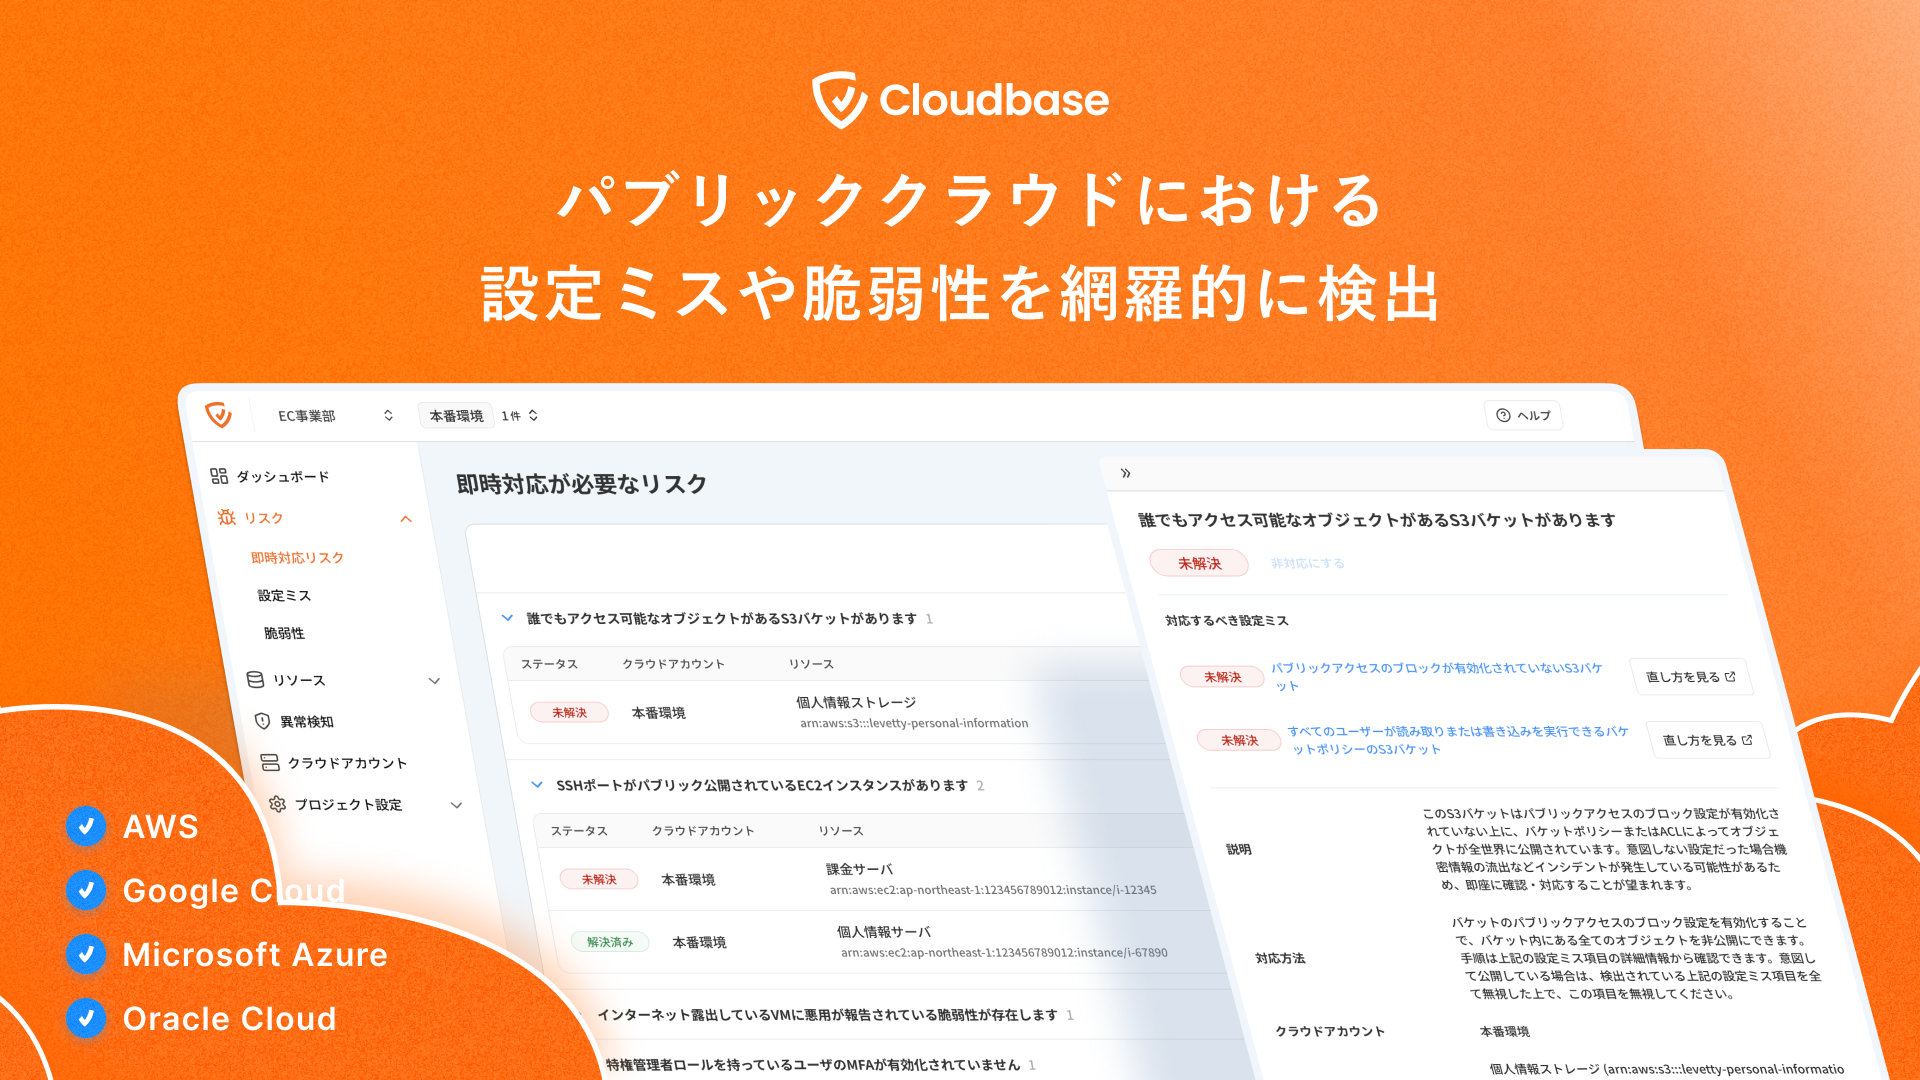 【導入事例】日本発のクラウドセキュリティ企業「Cloudbase」、TOPPANホールディングス株式会社の導入事例を公開